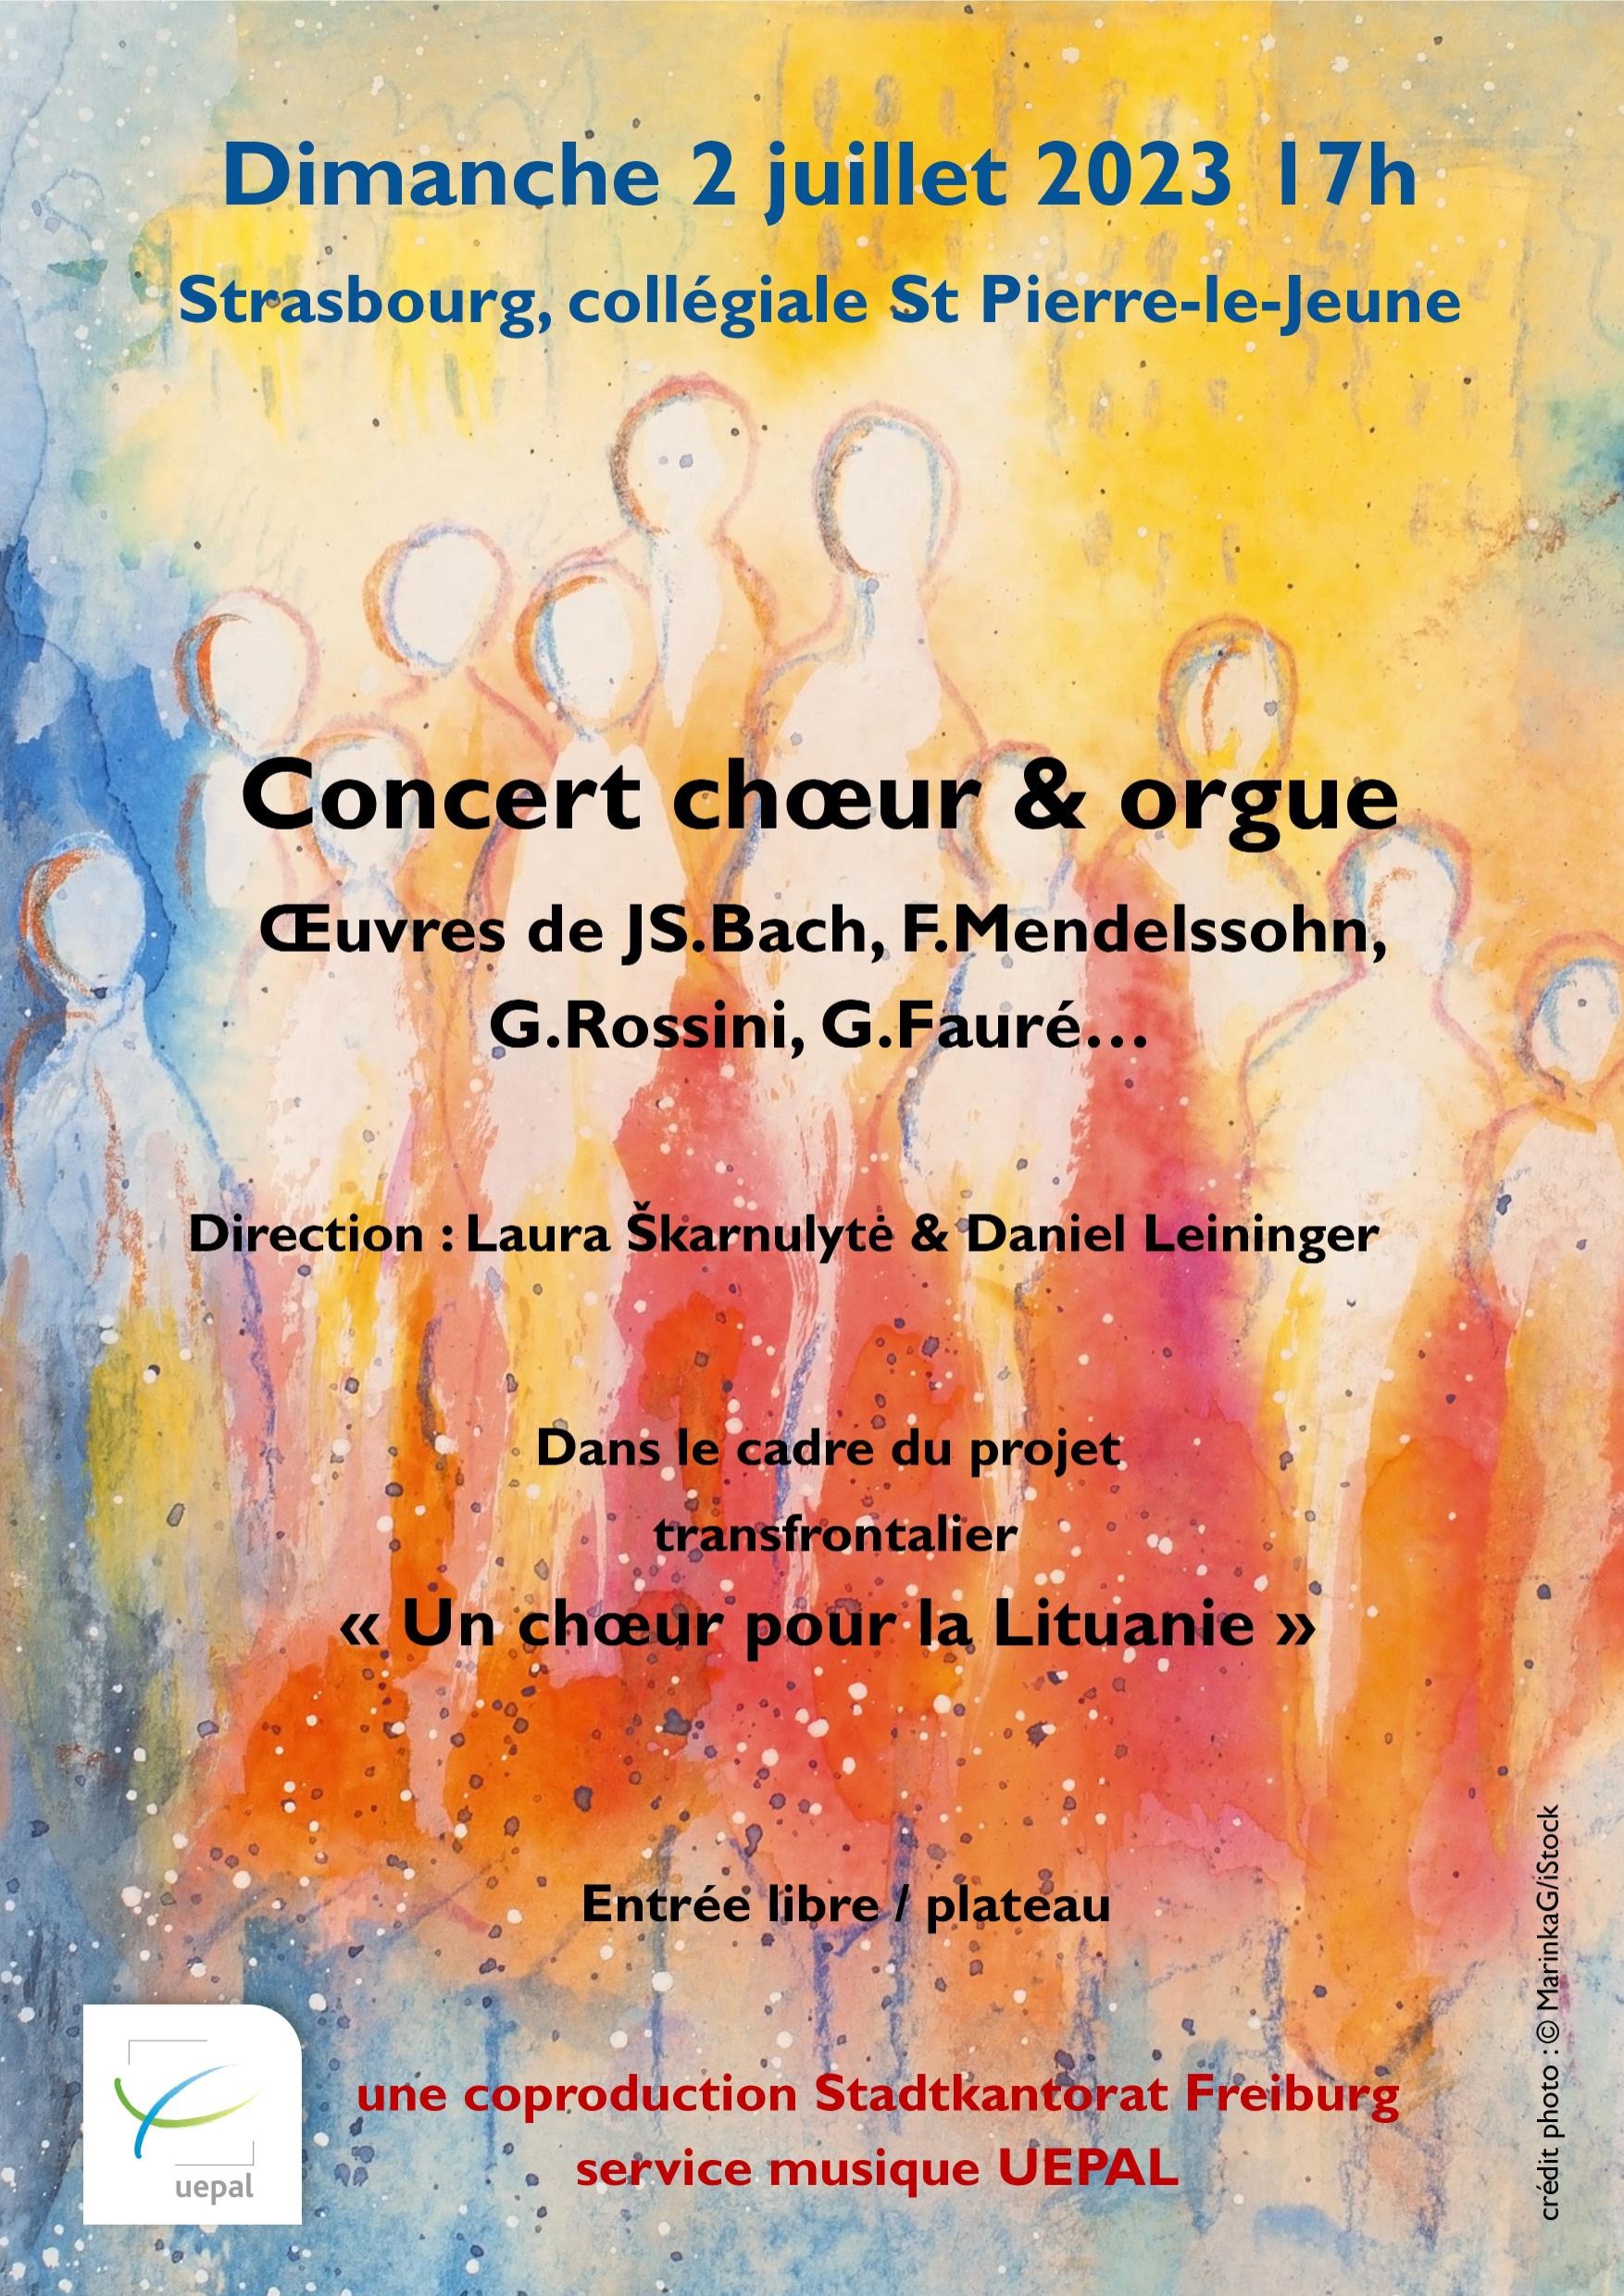 Concert Chœur & Orgue dimanche 2 juillet 2023 17h à Strasbourg, collégiale St Pierre-le-Jeune